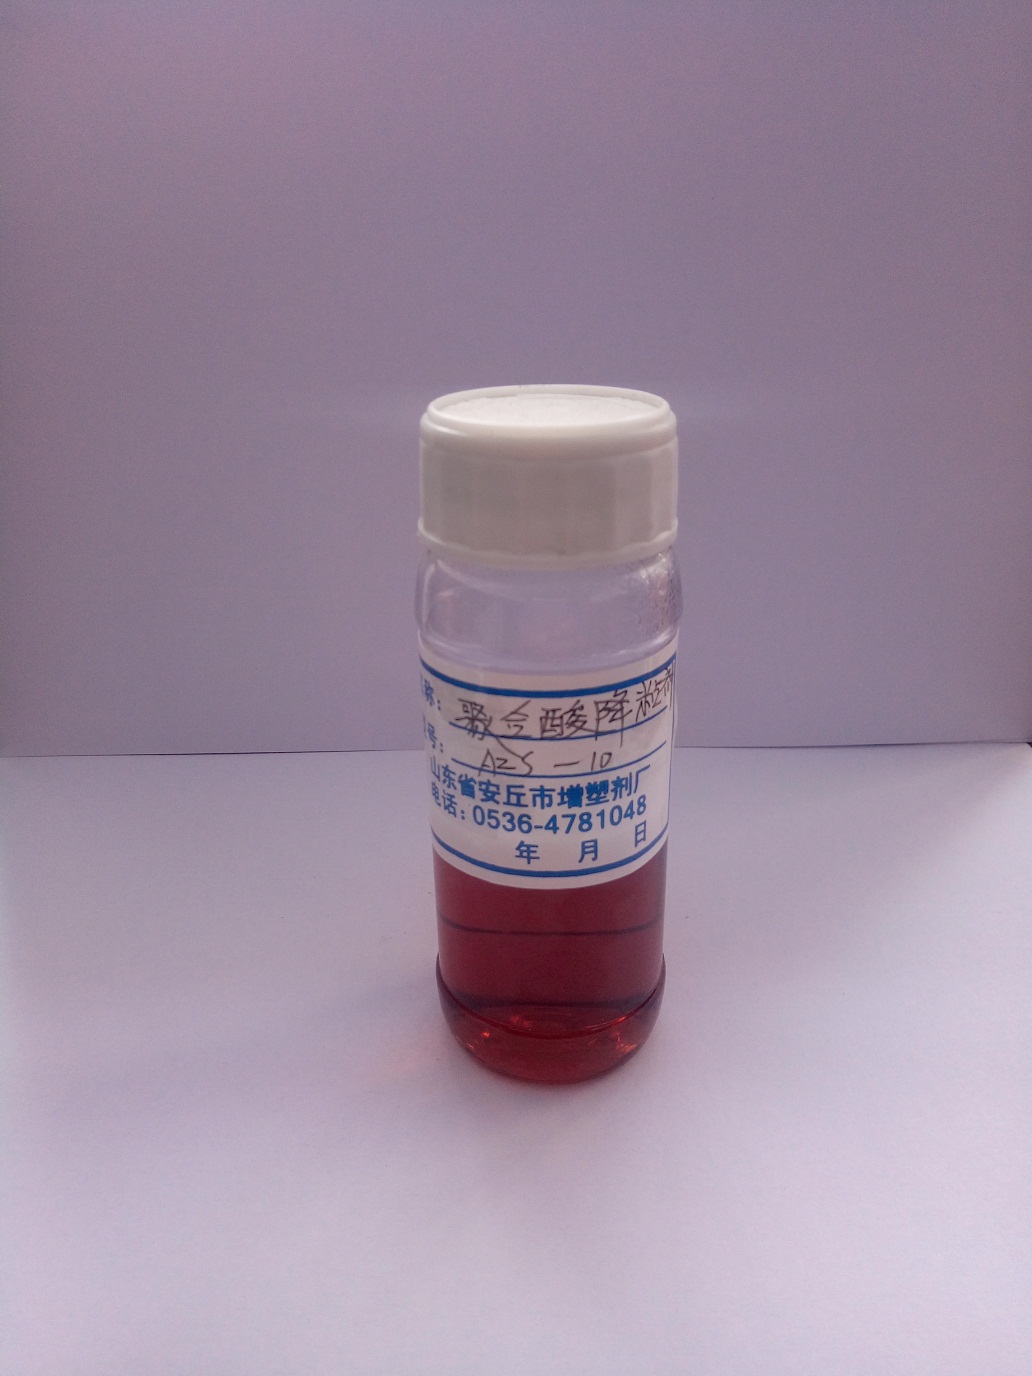 AZS-10聚合酸降粘剂